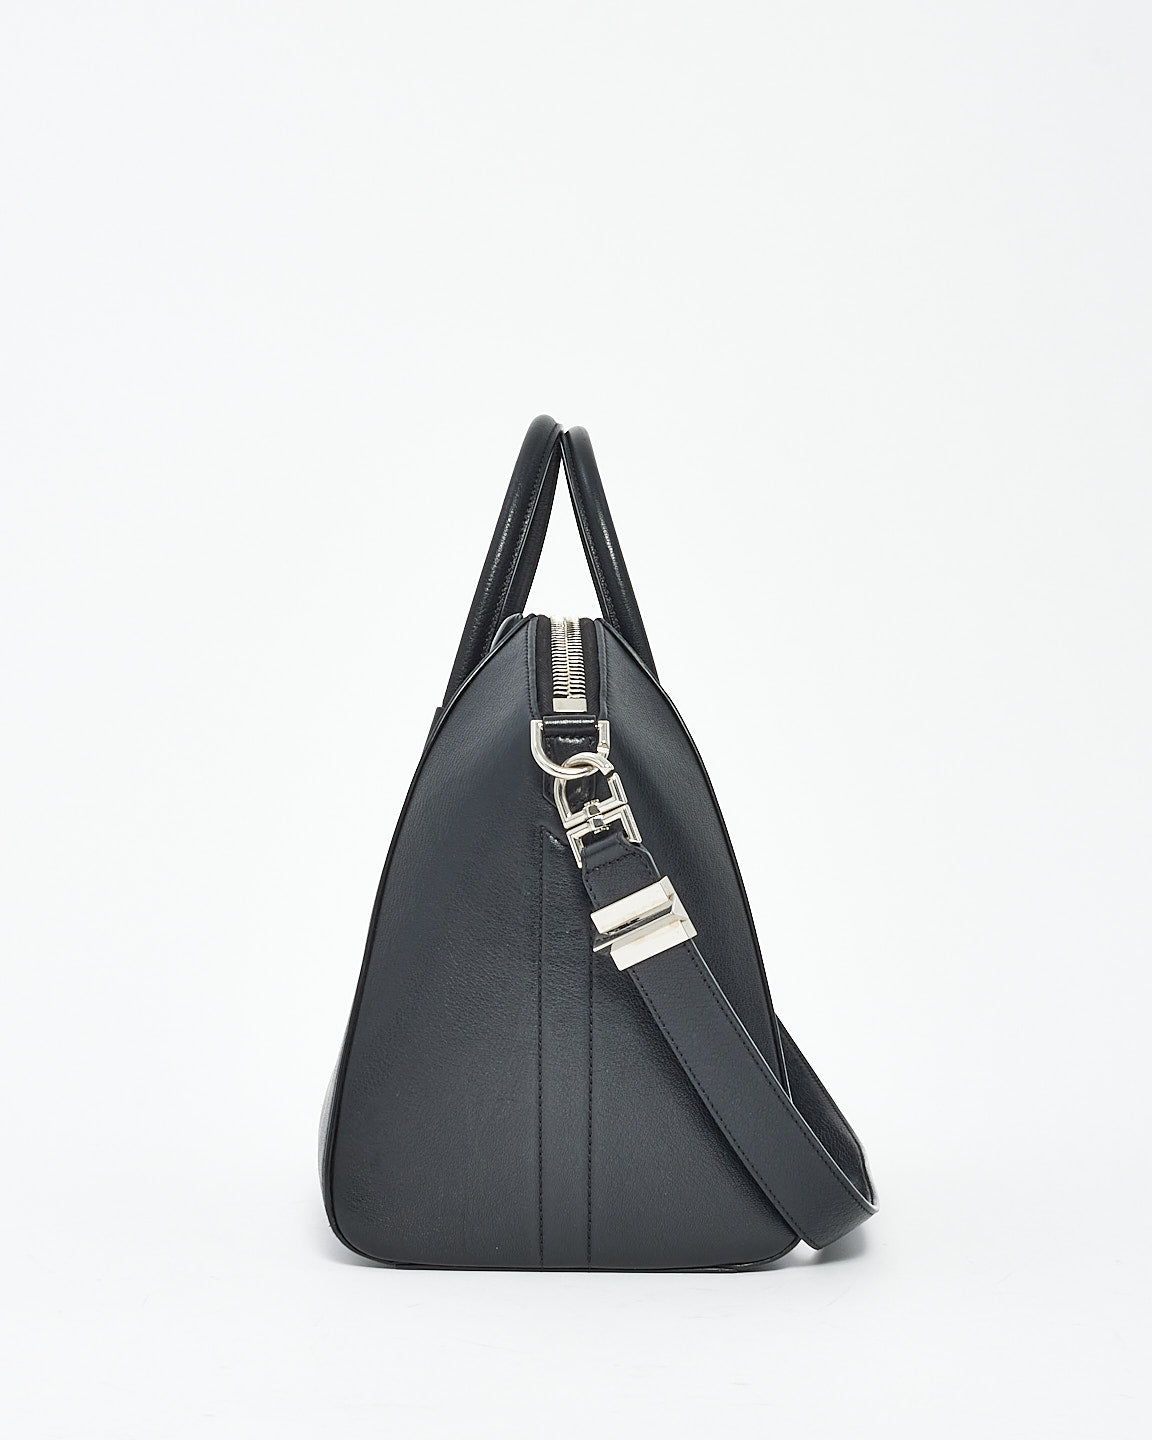 Givenchy Black Grained Medium Antigona Bag